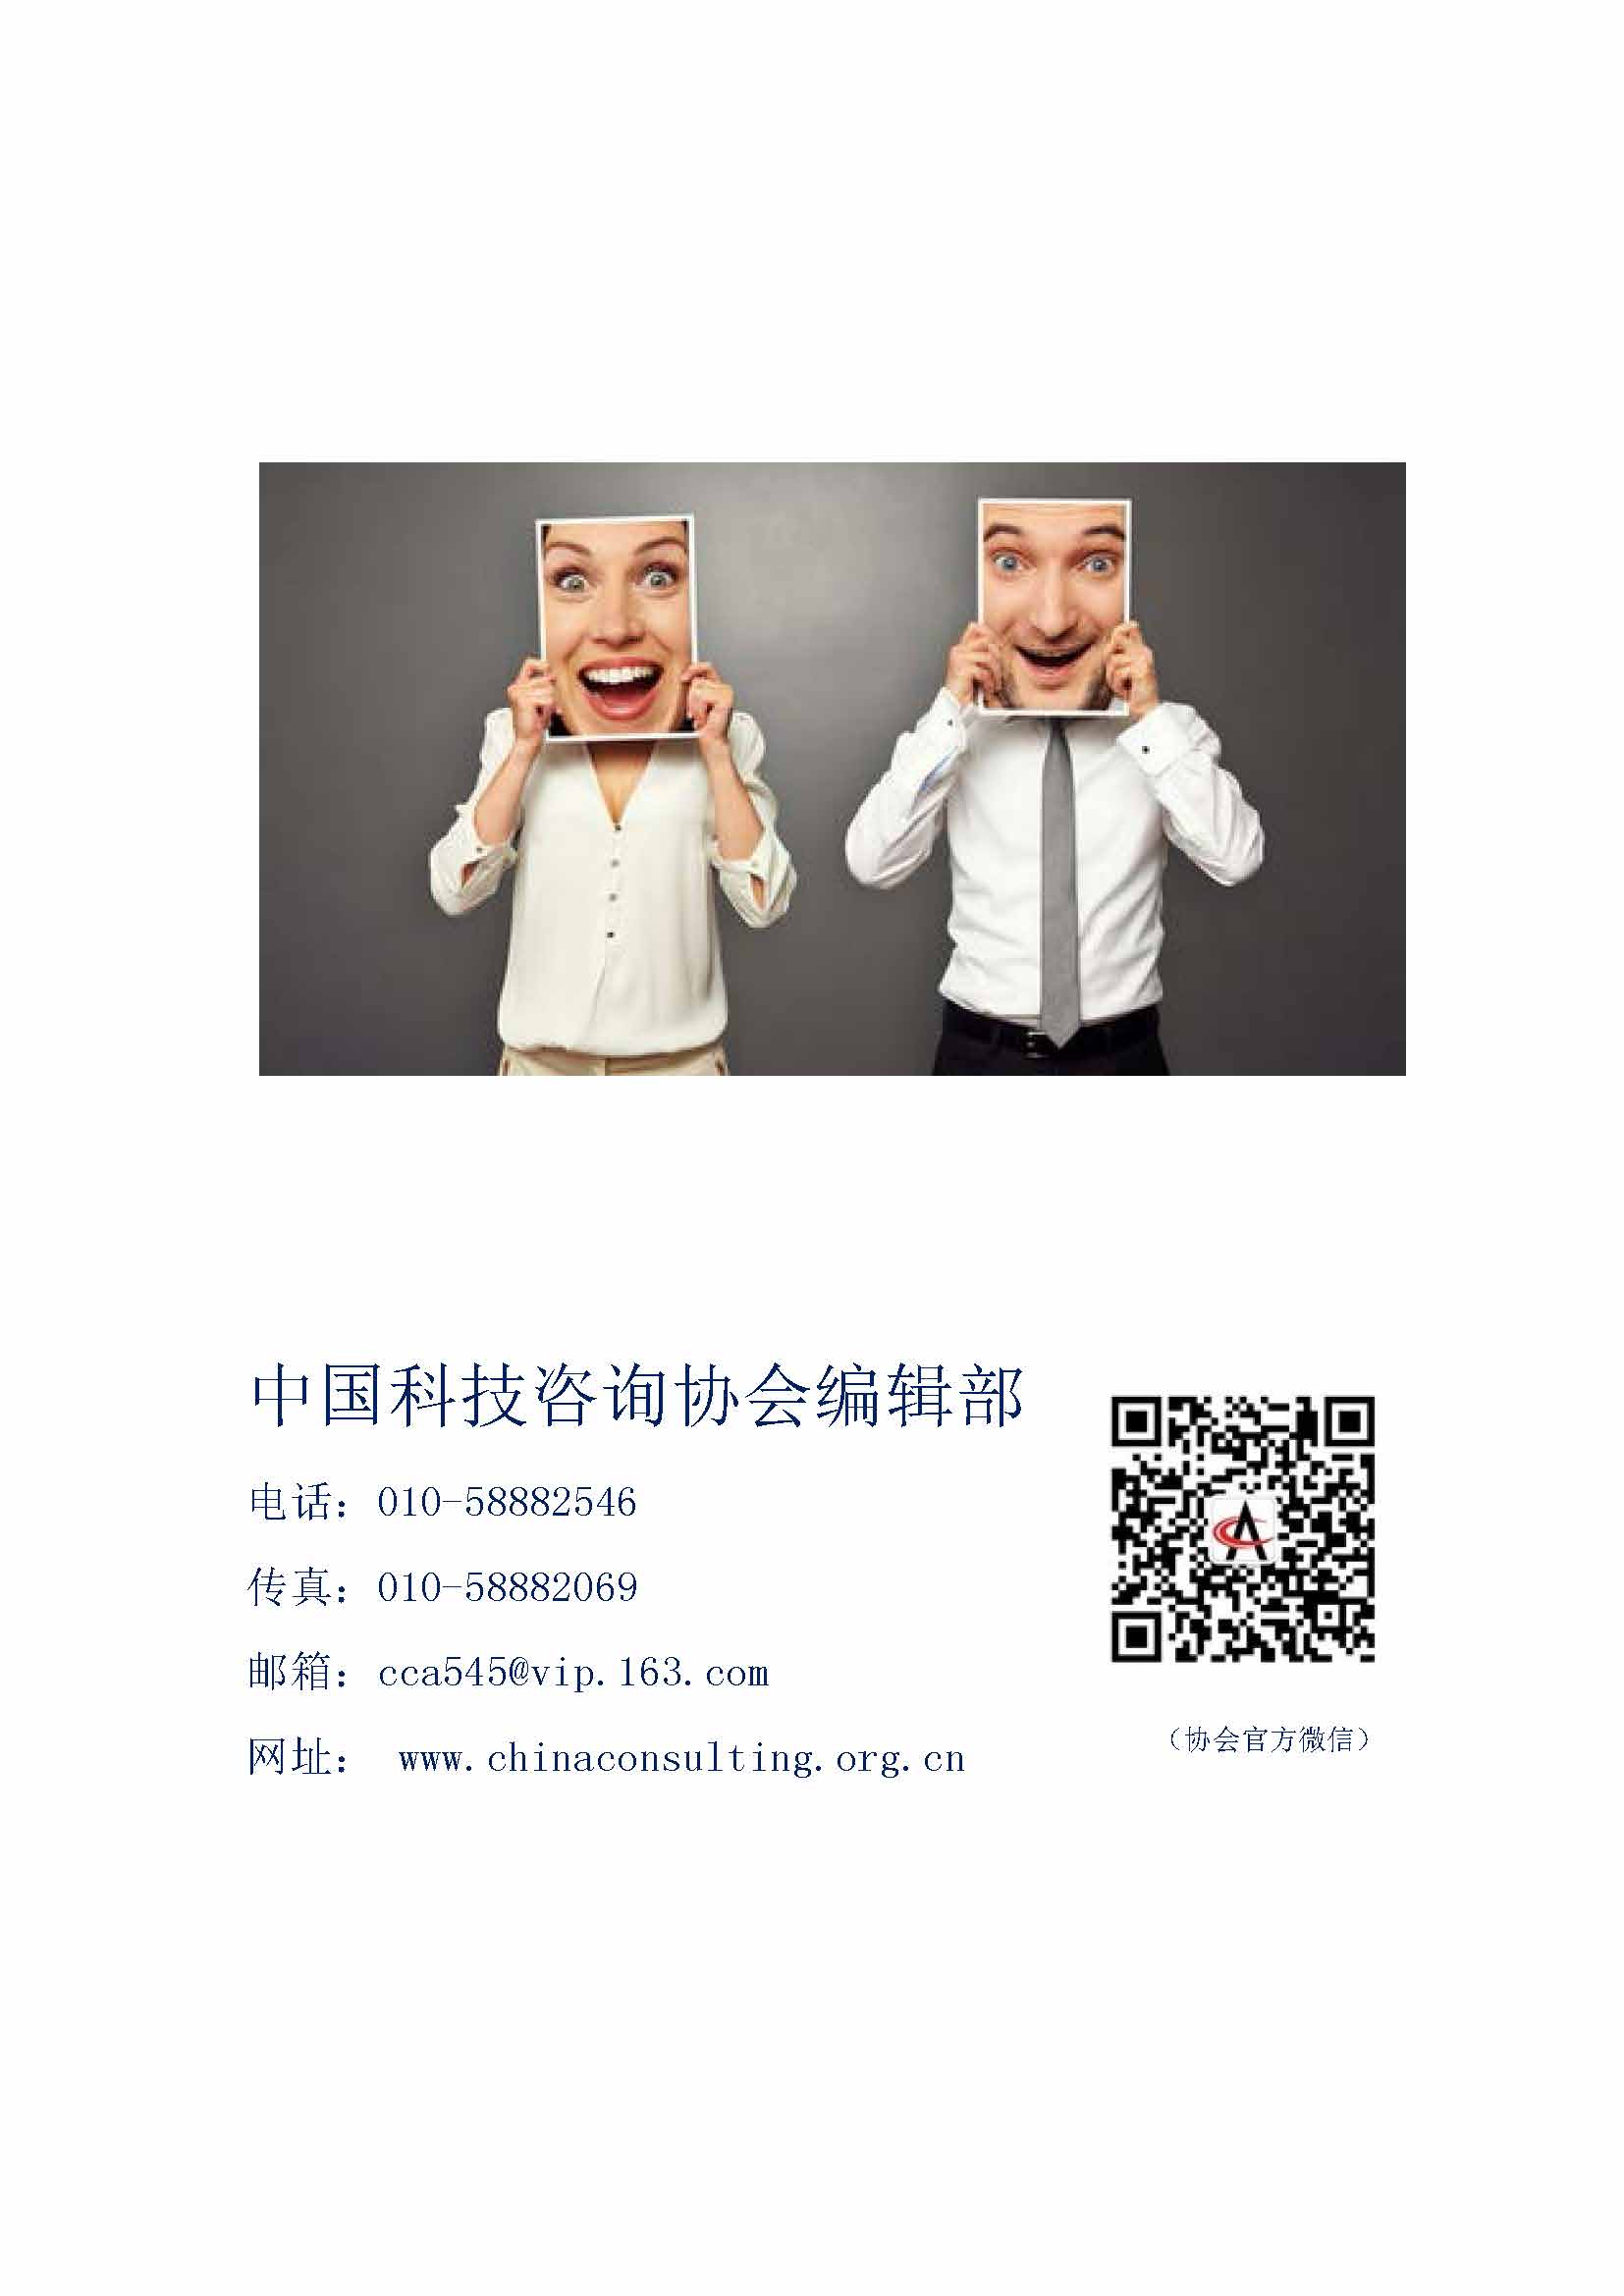 中国科技咨询协会国际快讯（第三十一期）_页面_10.jpg